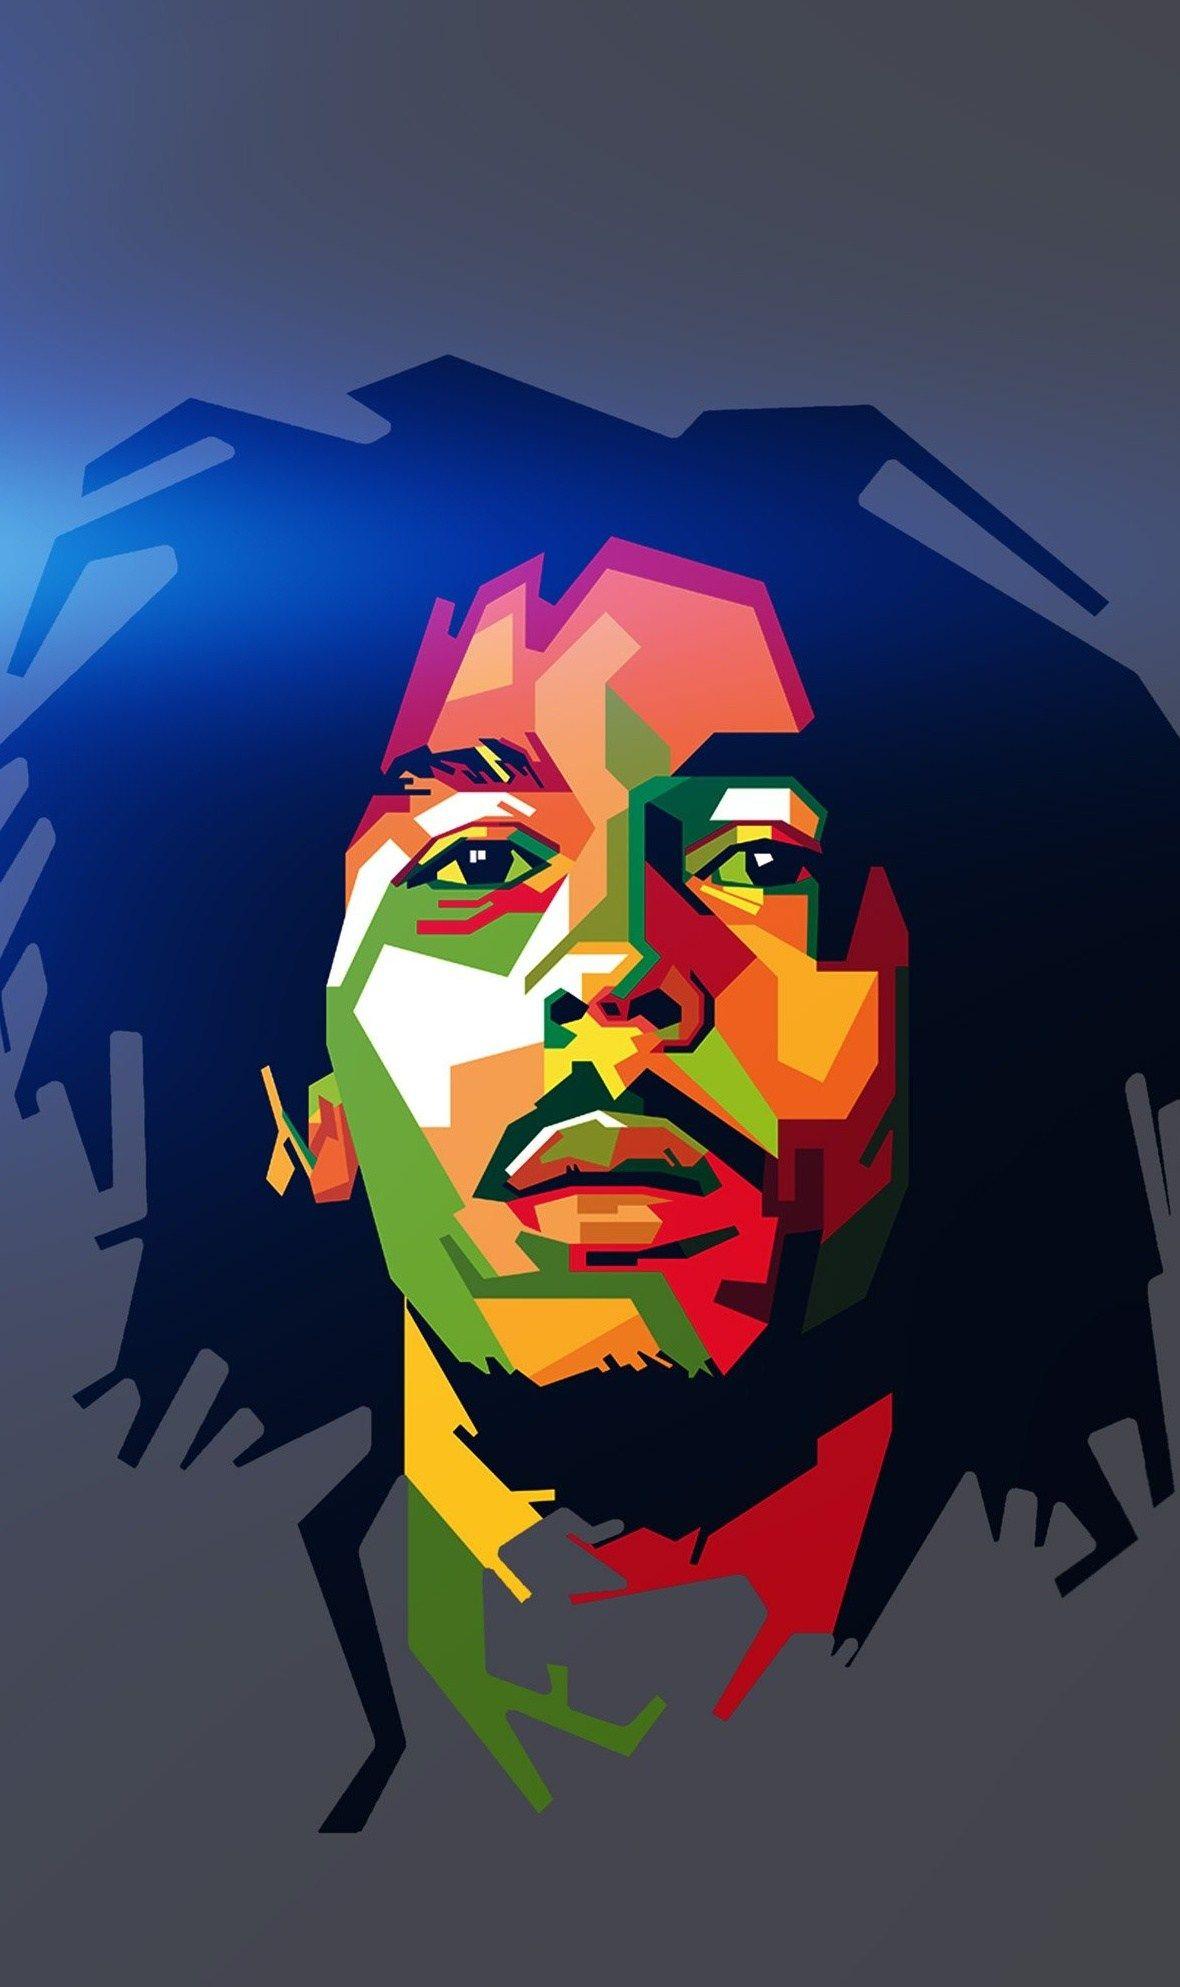 Bob Marley Cartoon Wallpapers - Top Free Bob Marley Cartoon Backgrounds ...